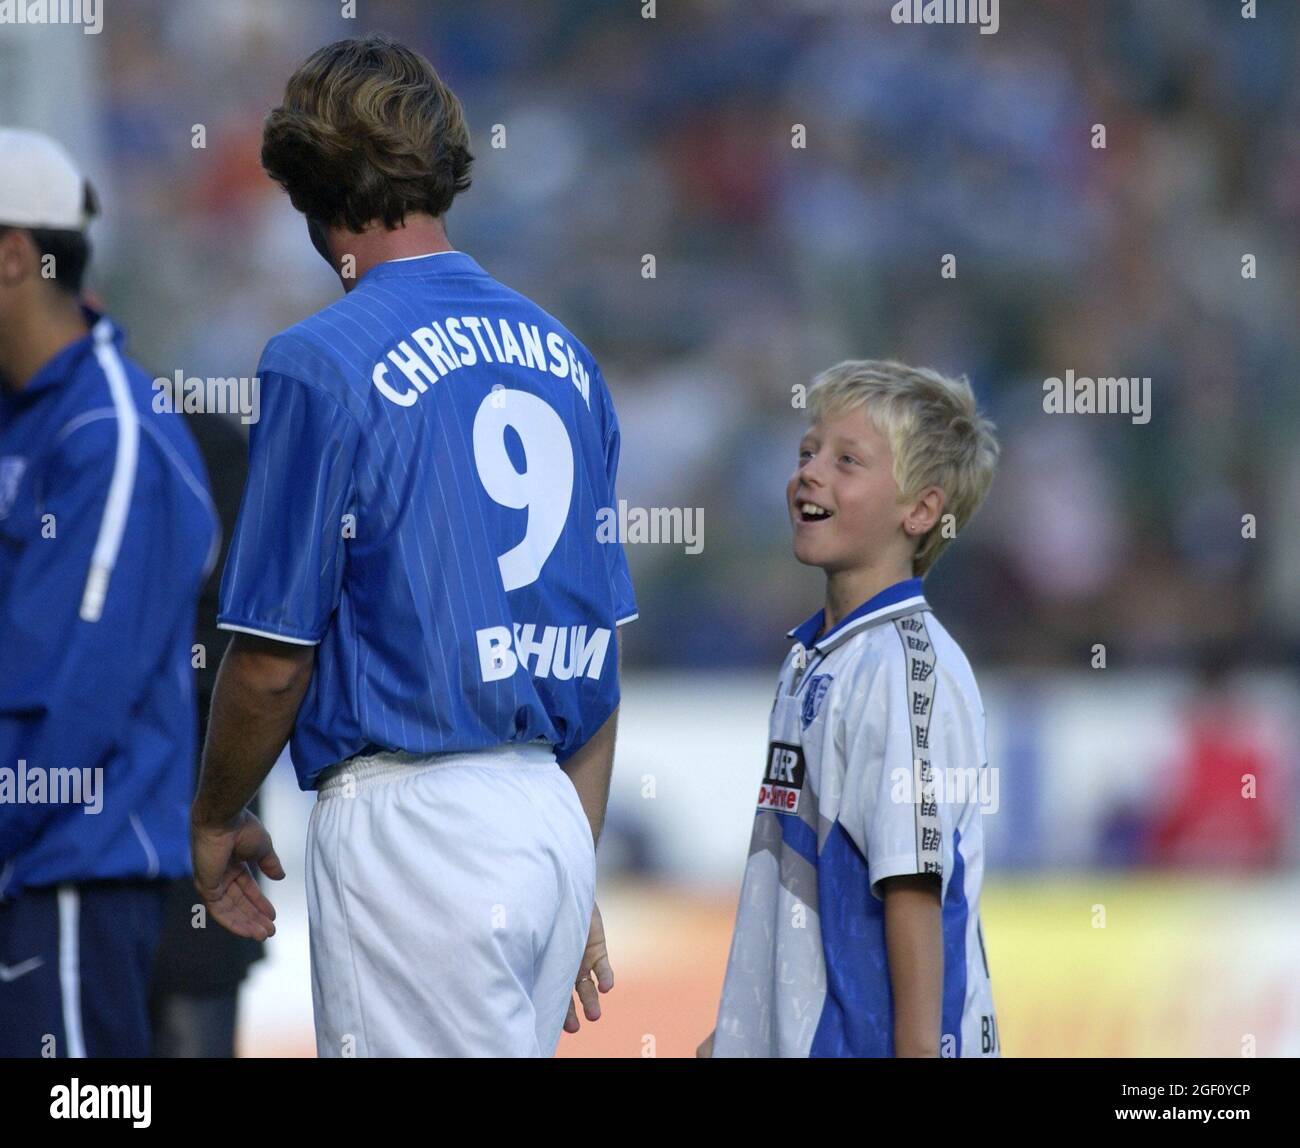 Bochum Germany 15.9.2002, Football: Bundesliga season 2002/03, VfL Bochum (VFL, blue) vs Hansa Rostock (HRO, red) 0:1 —  THOMAS CHRISTIANSEN (VFL) Stock Photo